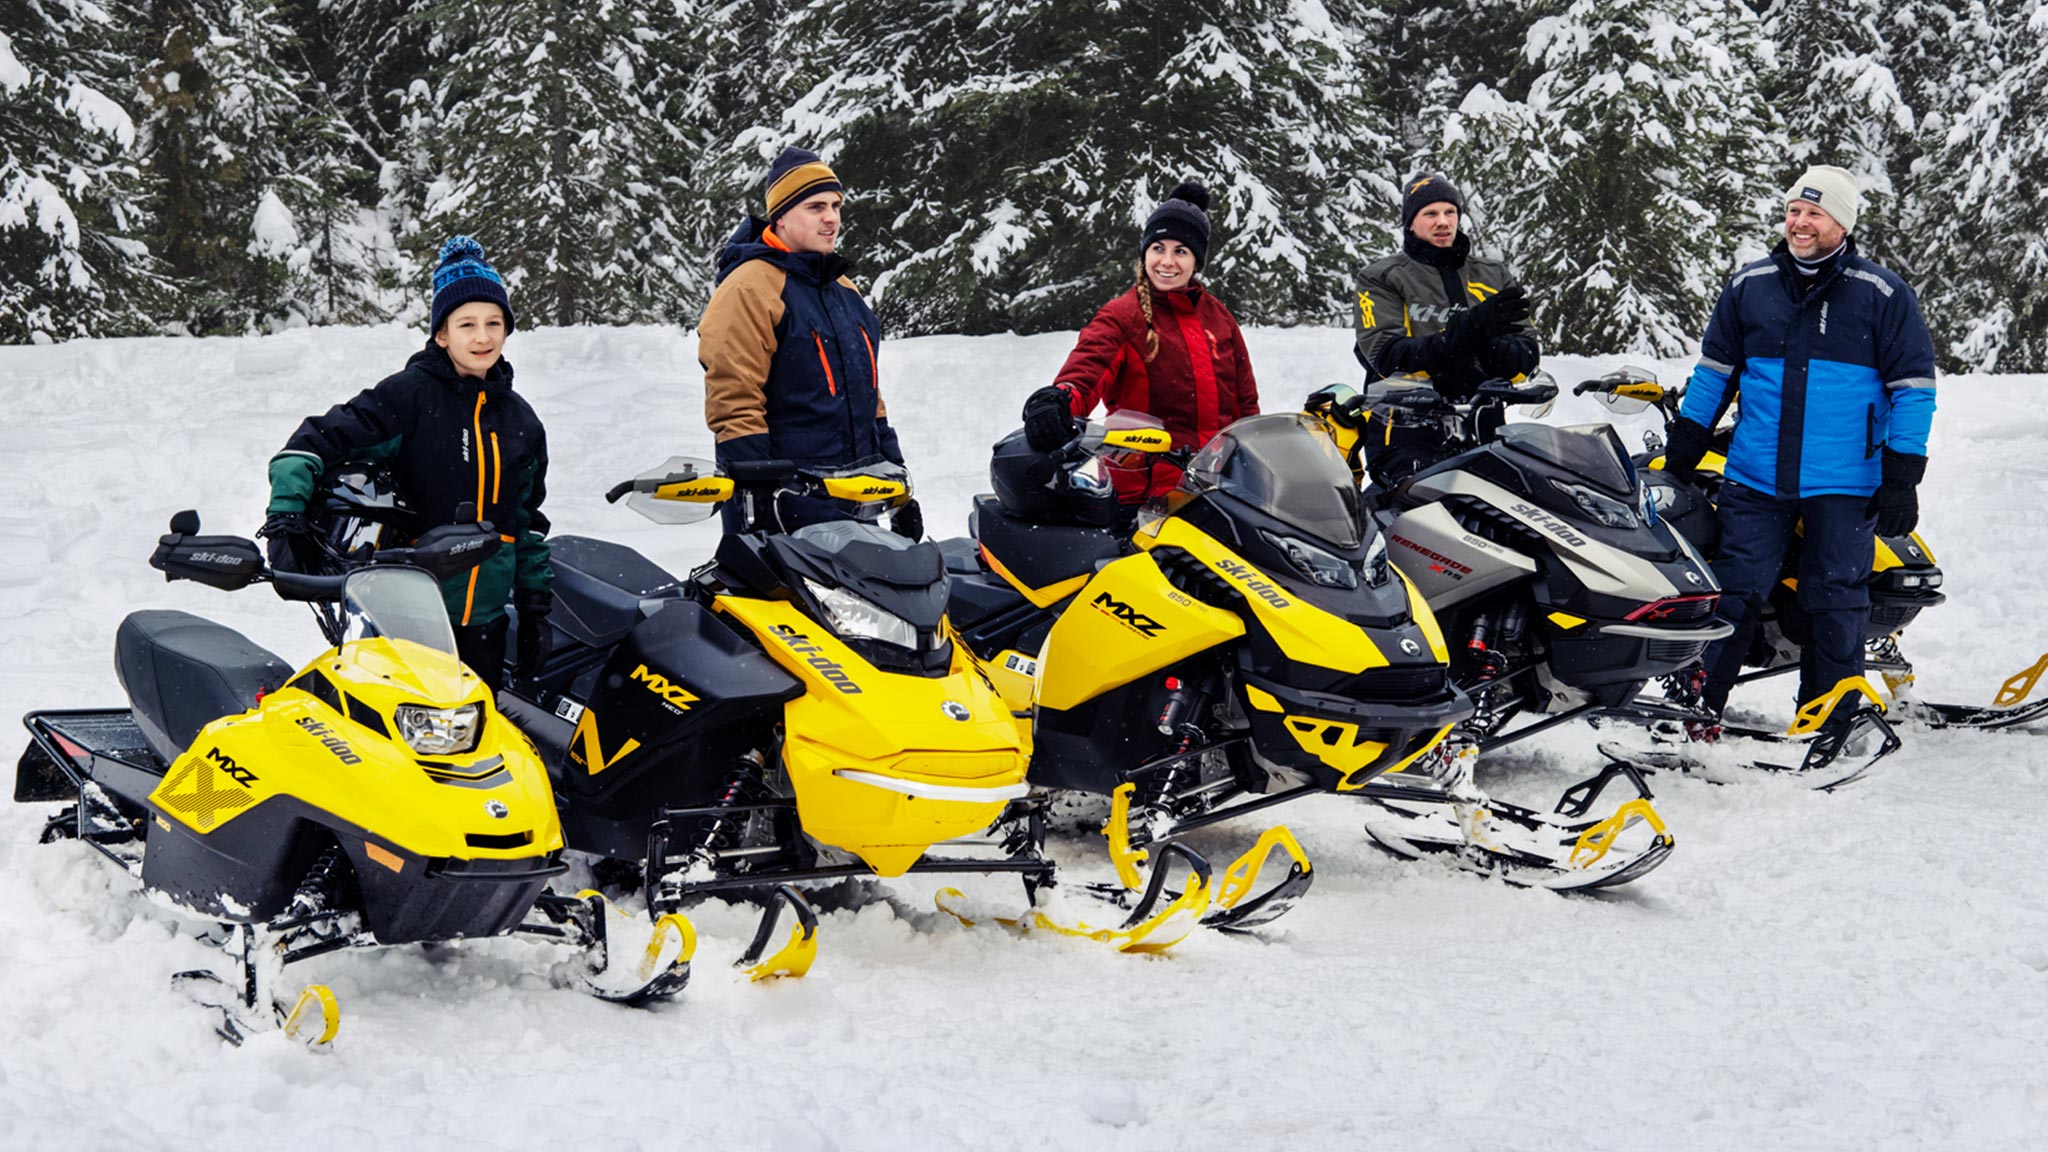 Ski-Doo-førere starter eventyret sitt med snøscootere